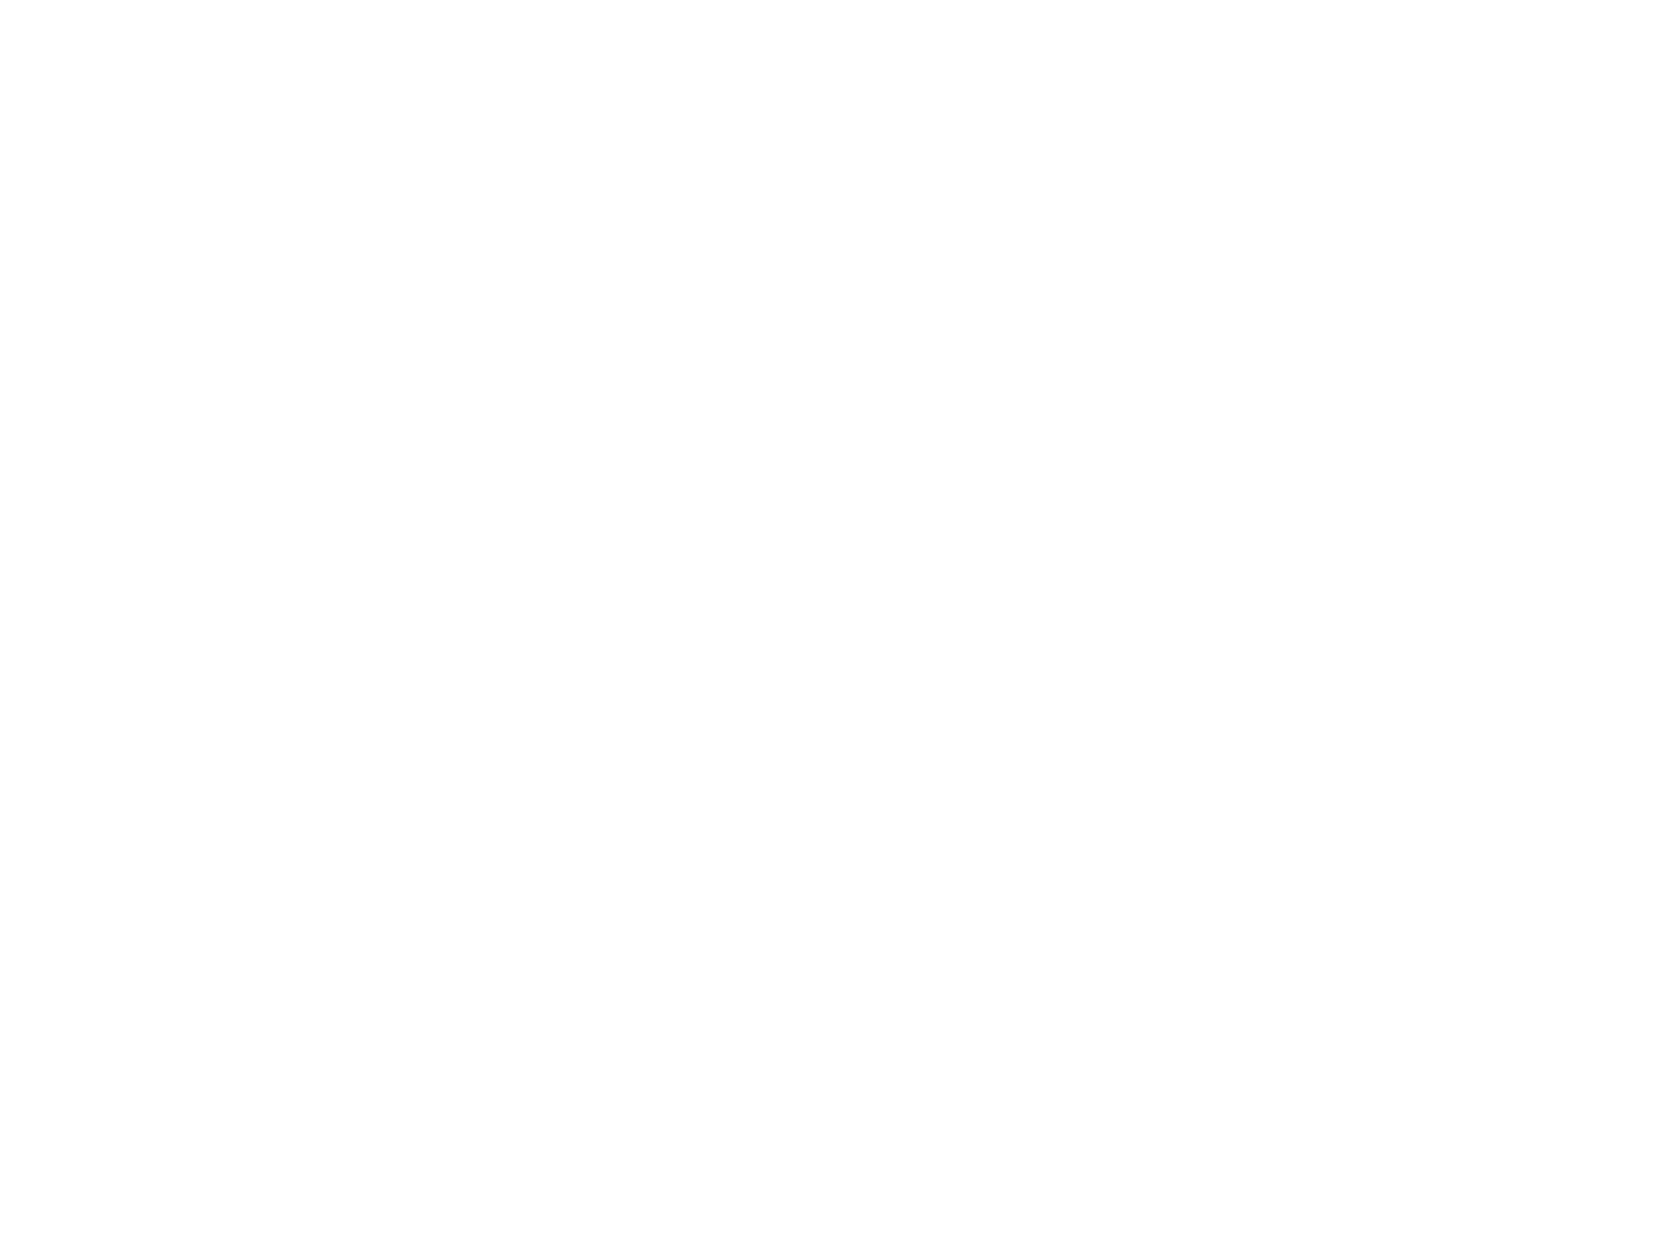 Июнь 2008, нижняя аудитория МБФ, Т.Пухальская, А.Родионов, А.Сомов, М.Спирин, В.Кучеряну, Е.Змиевская, И.Антоников